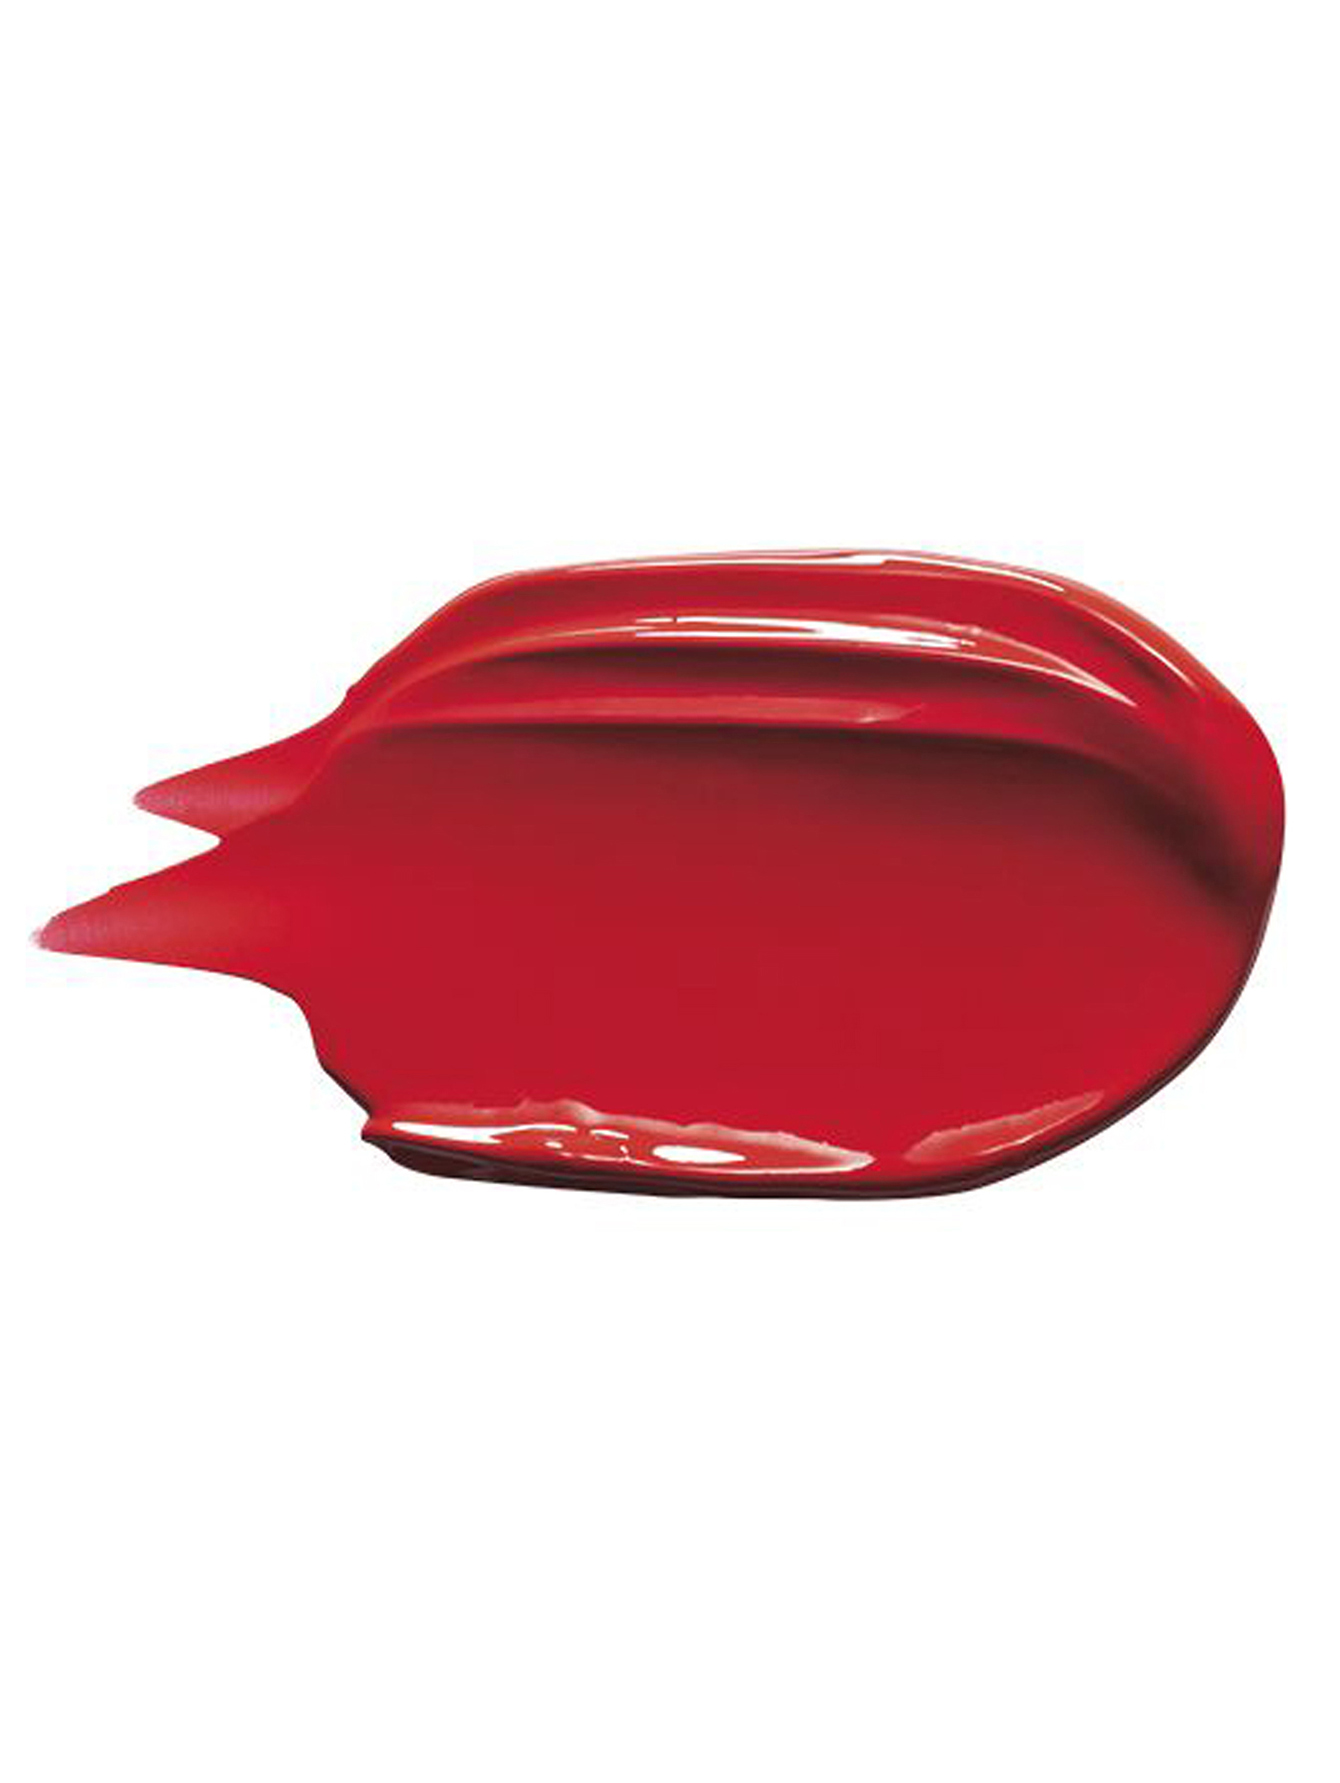 SHISEIDO Помада для губ с невесомым покрытием VisionAiry Gel, 221 CODE RED, 1.6 г - Обтравка1